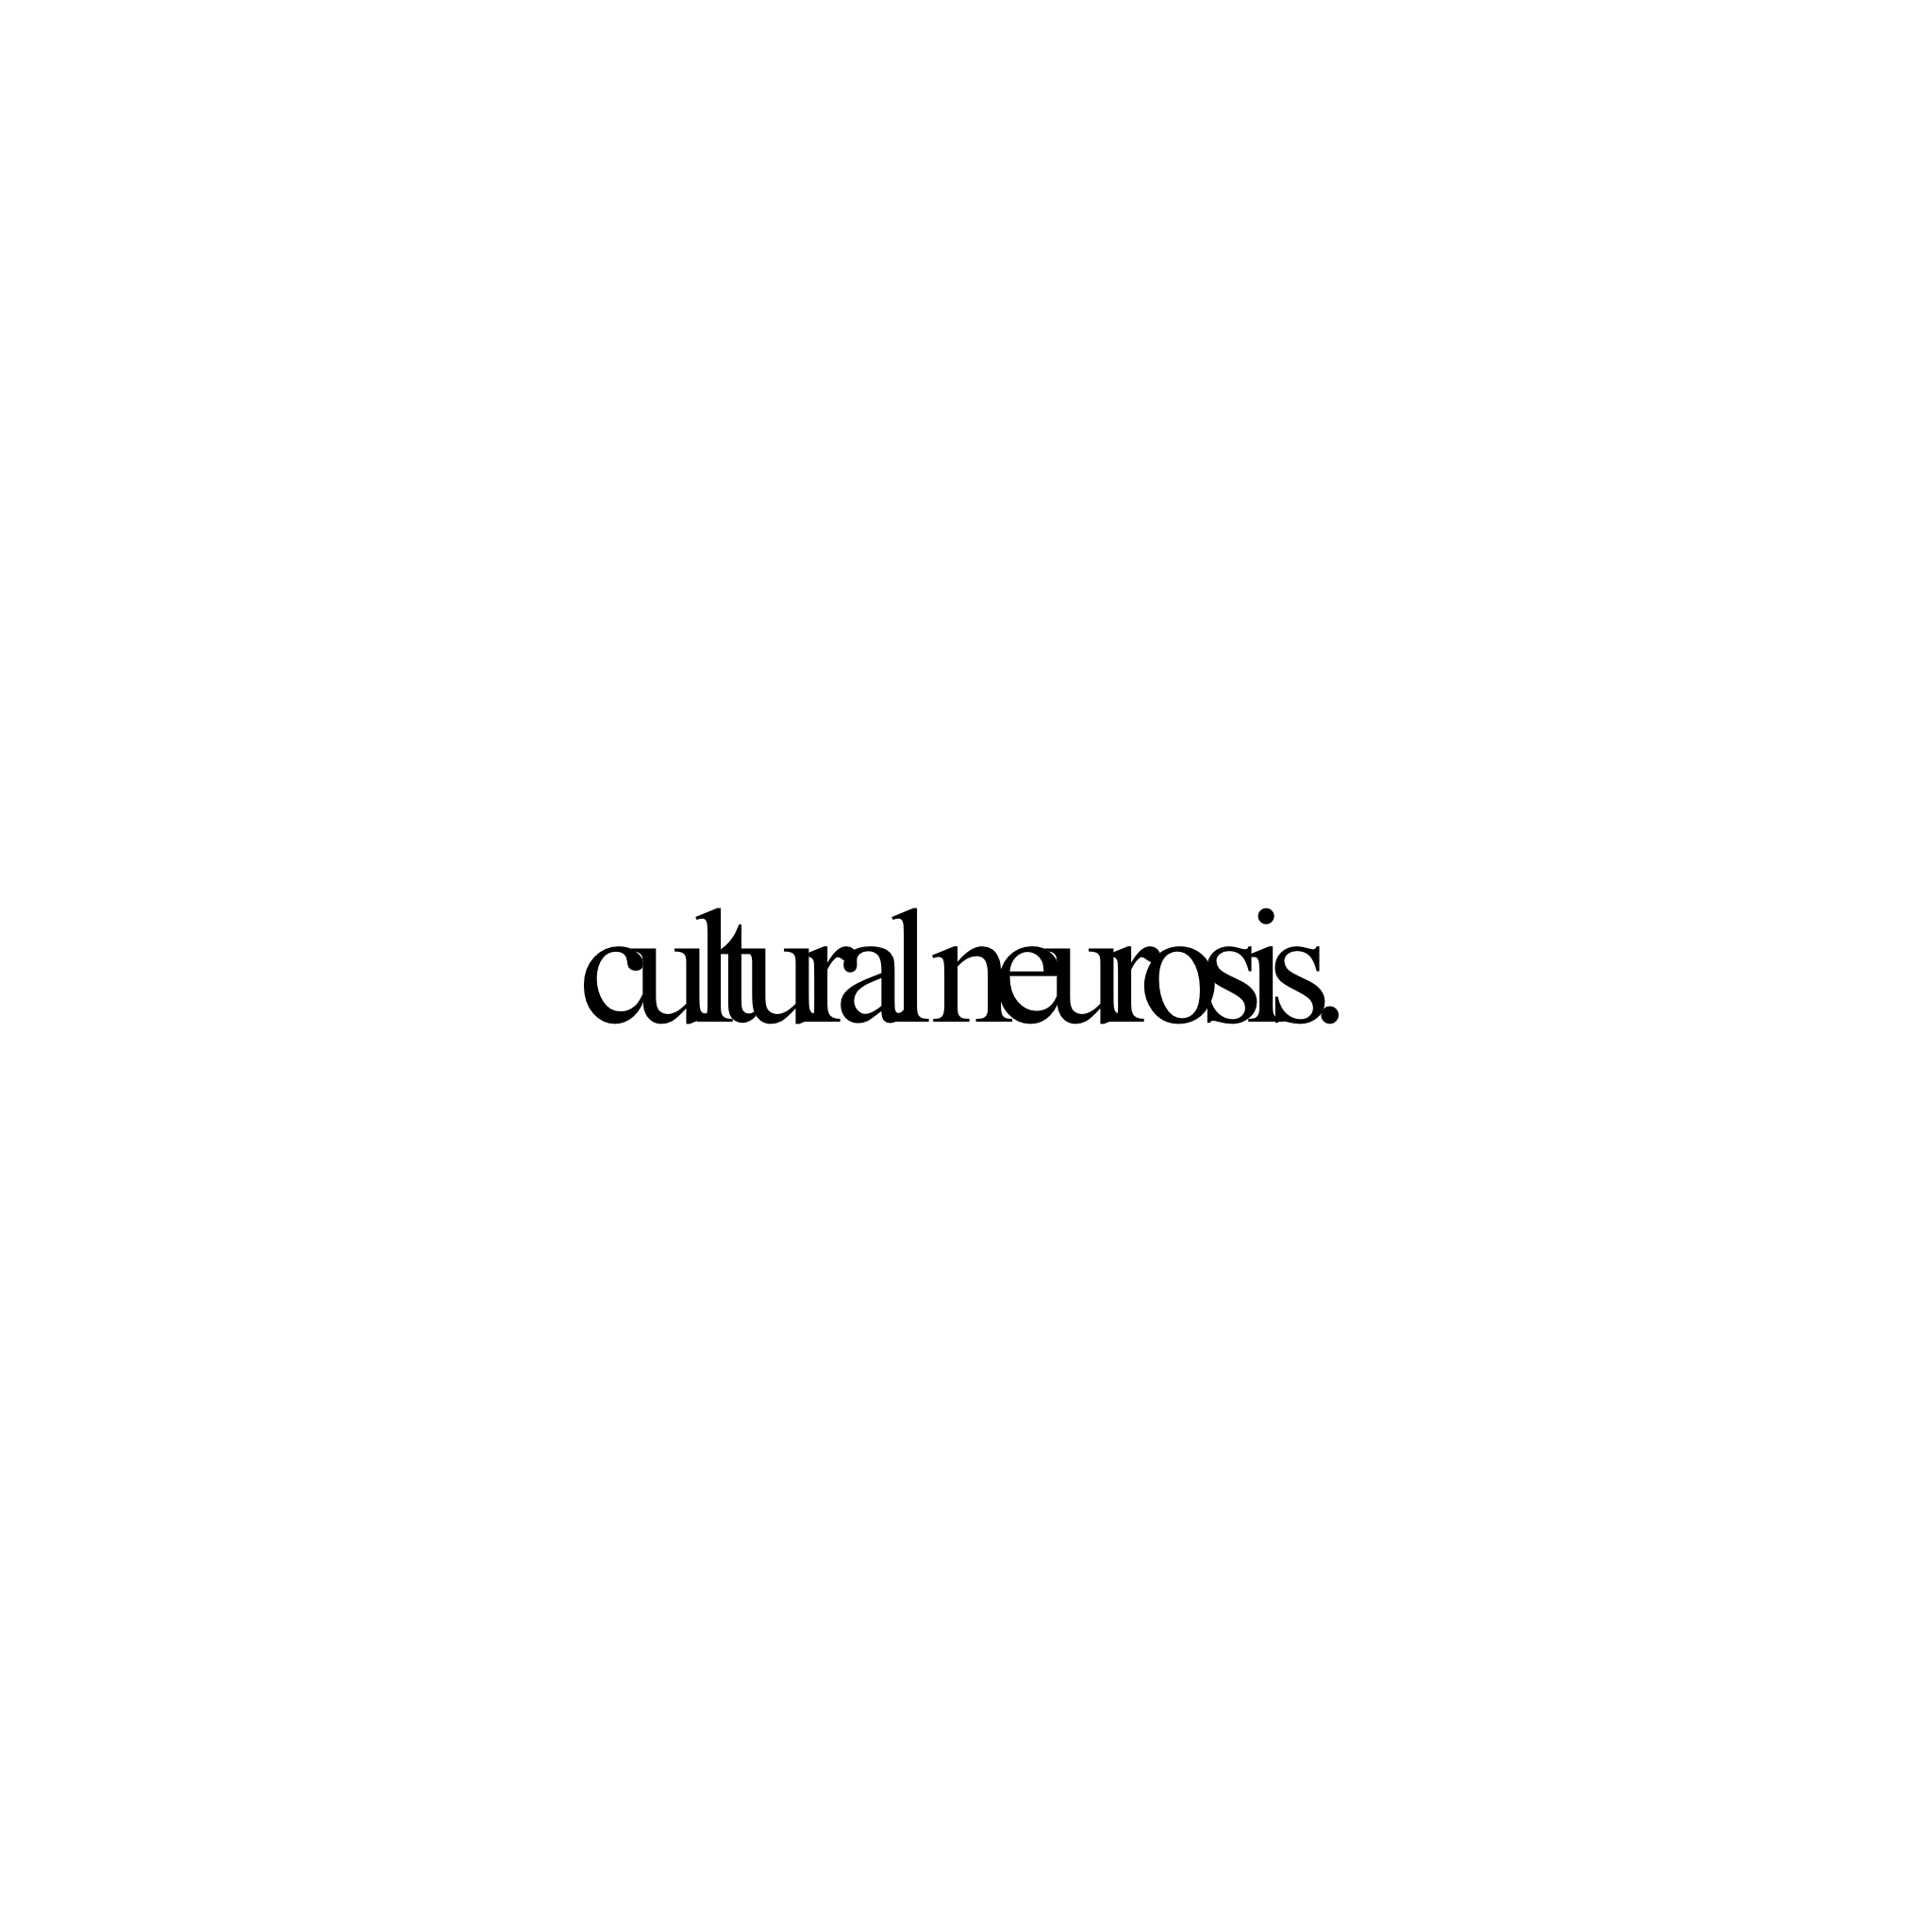 cultural neurosis. banner